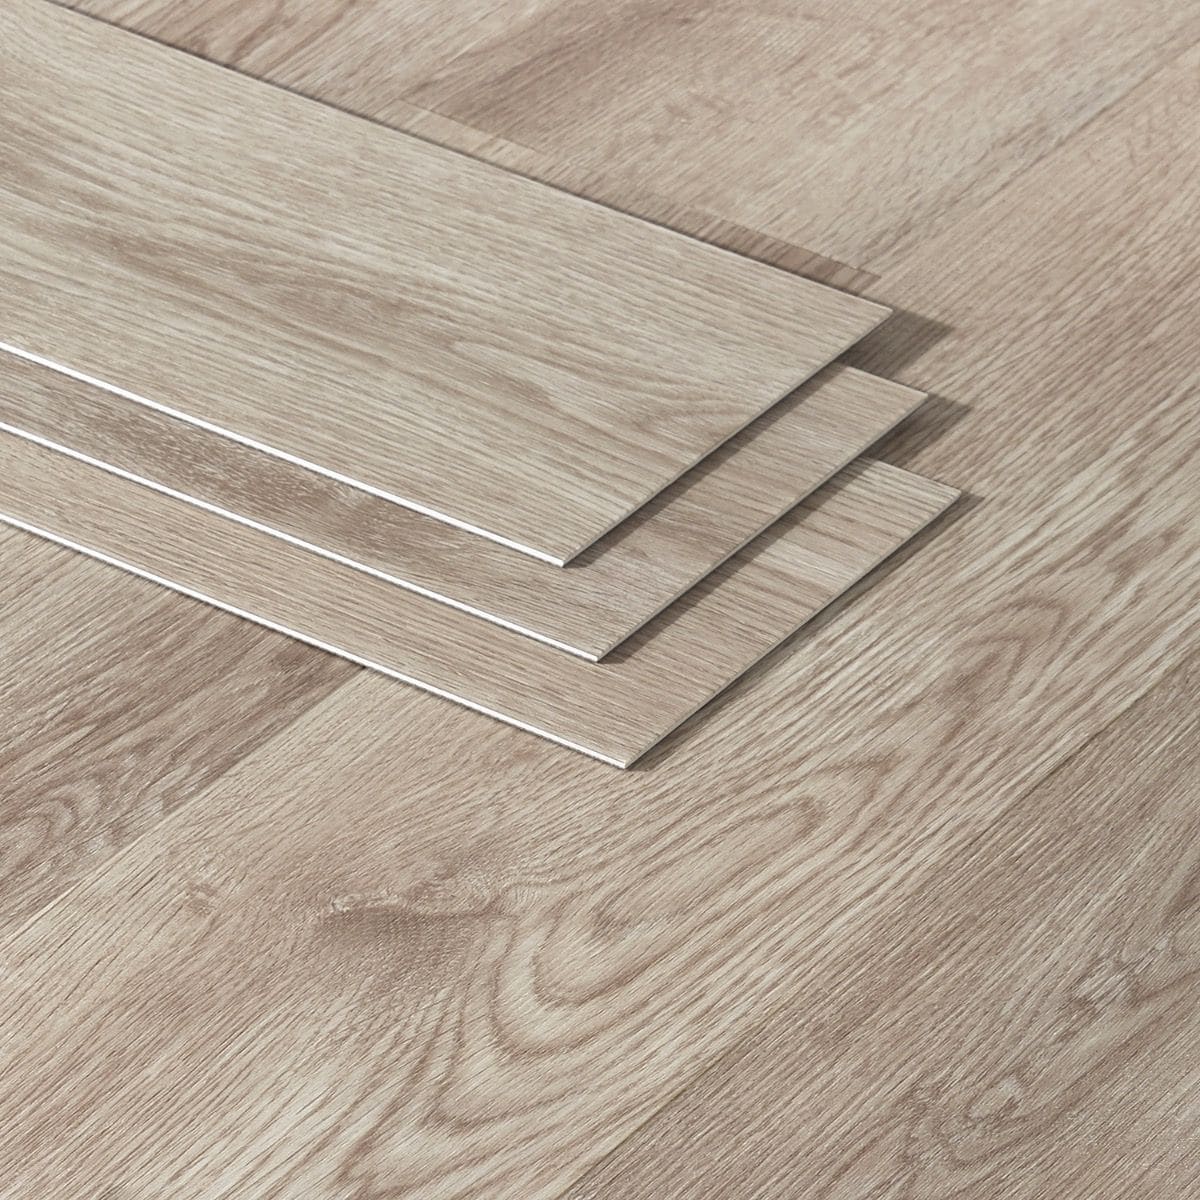 Artmore Tile Loseta Wood Look Modern, Luxury Vinyl Tile Flooring Wood Look